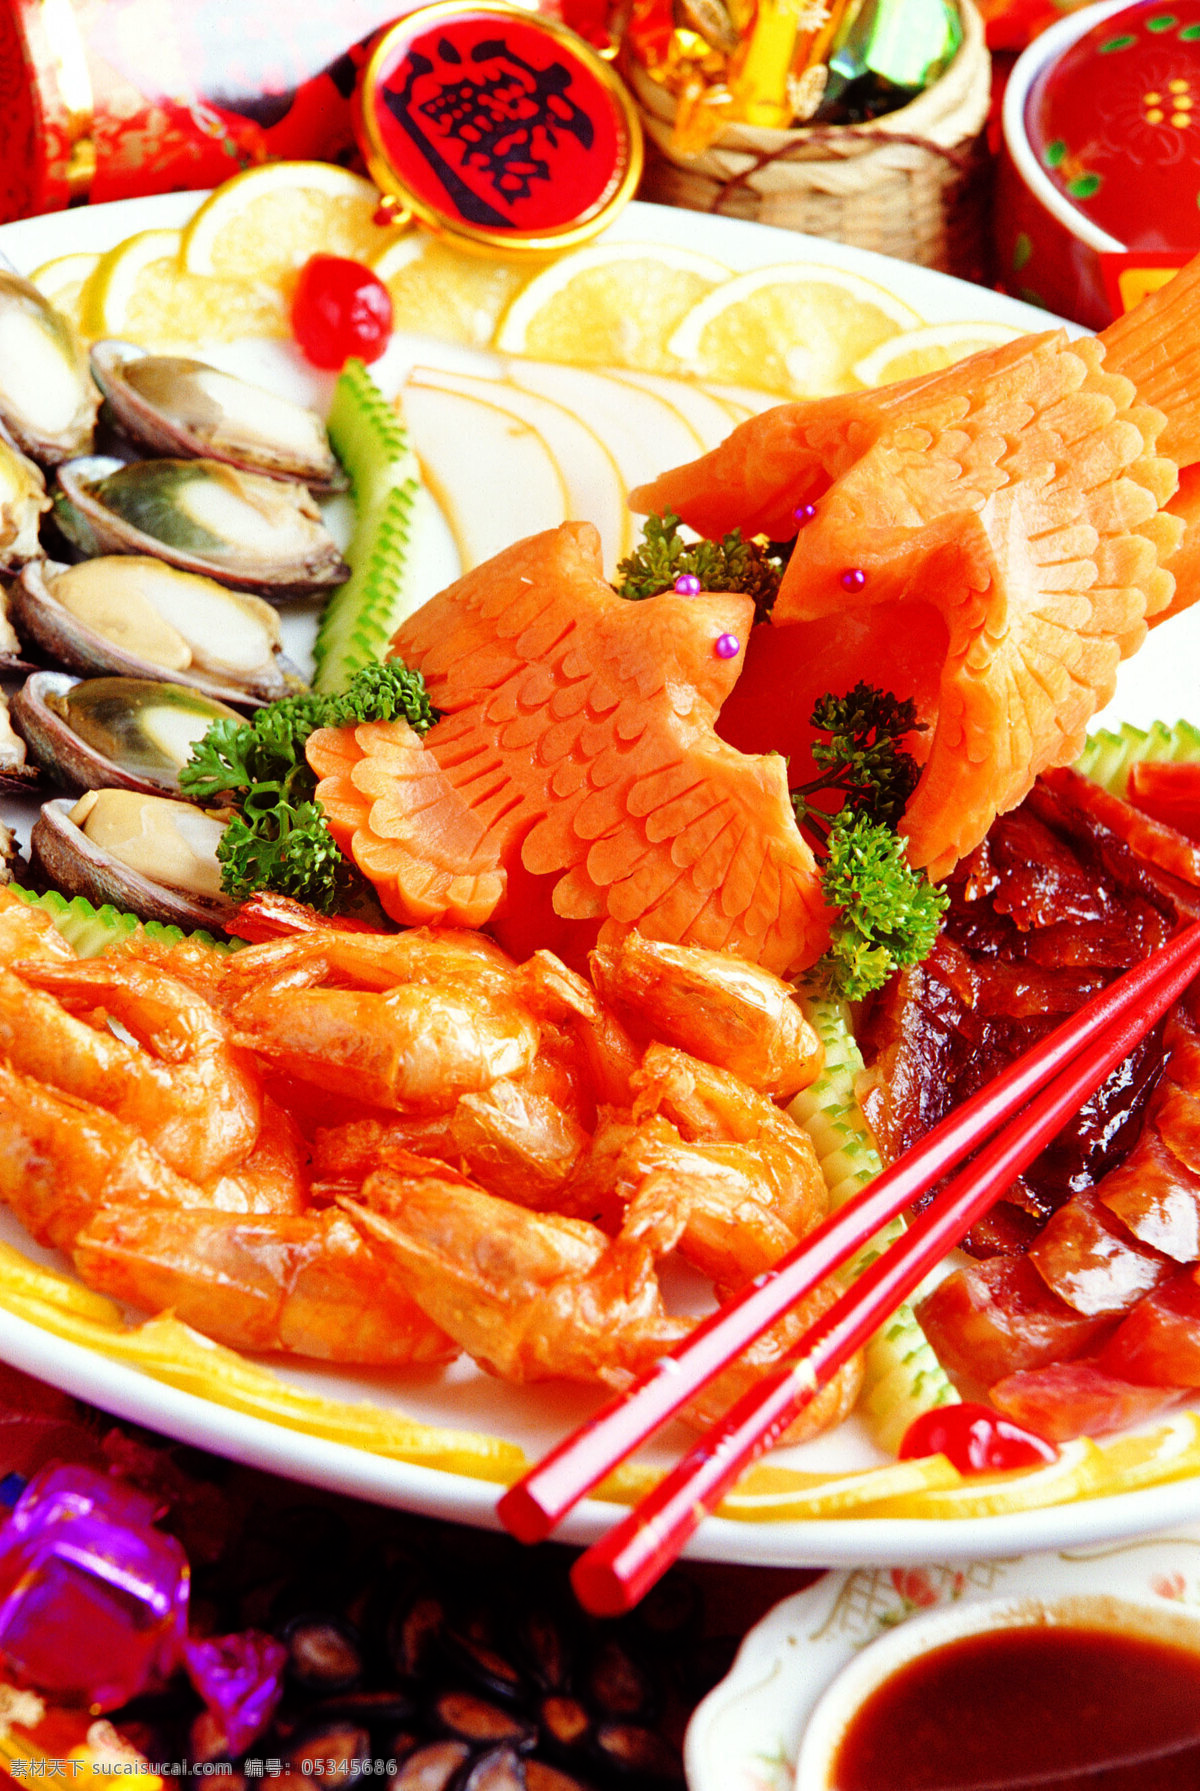 海鲜拼盘 唯美 食物 食品 美食 美味 营养 健康 海鲜 海味 拼盘 餐饮美食 传统美食